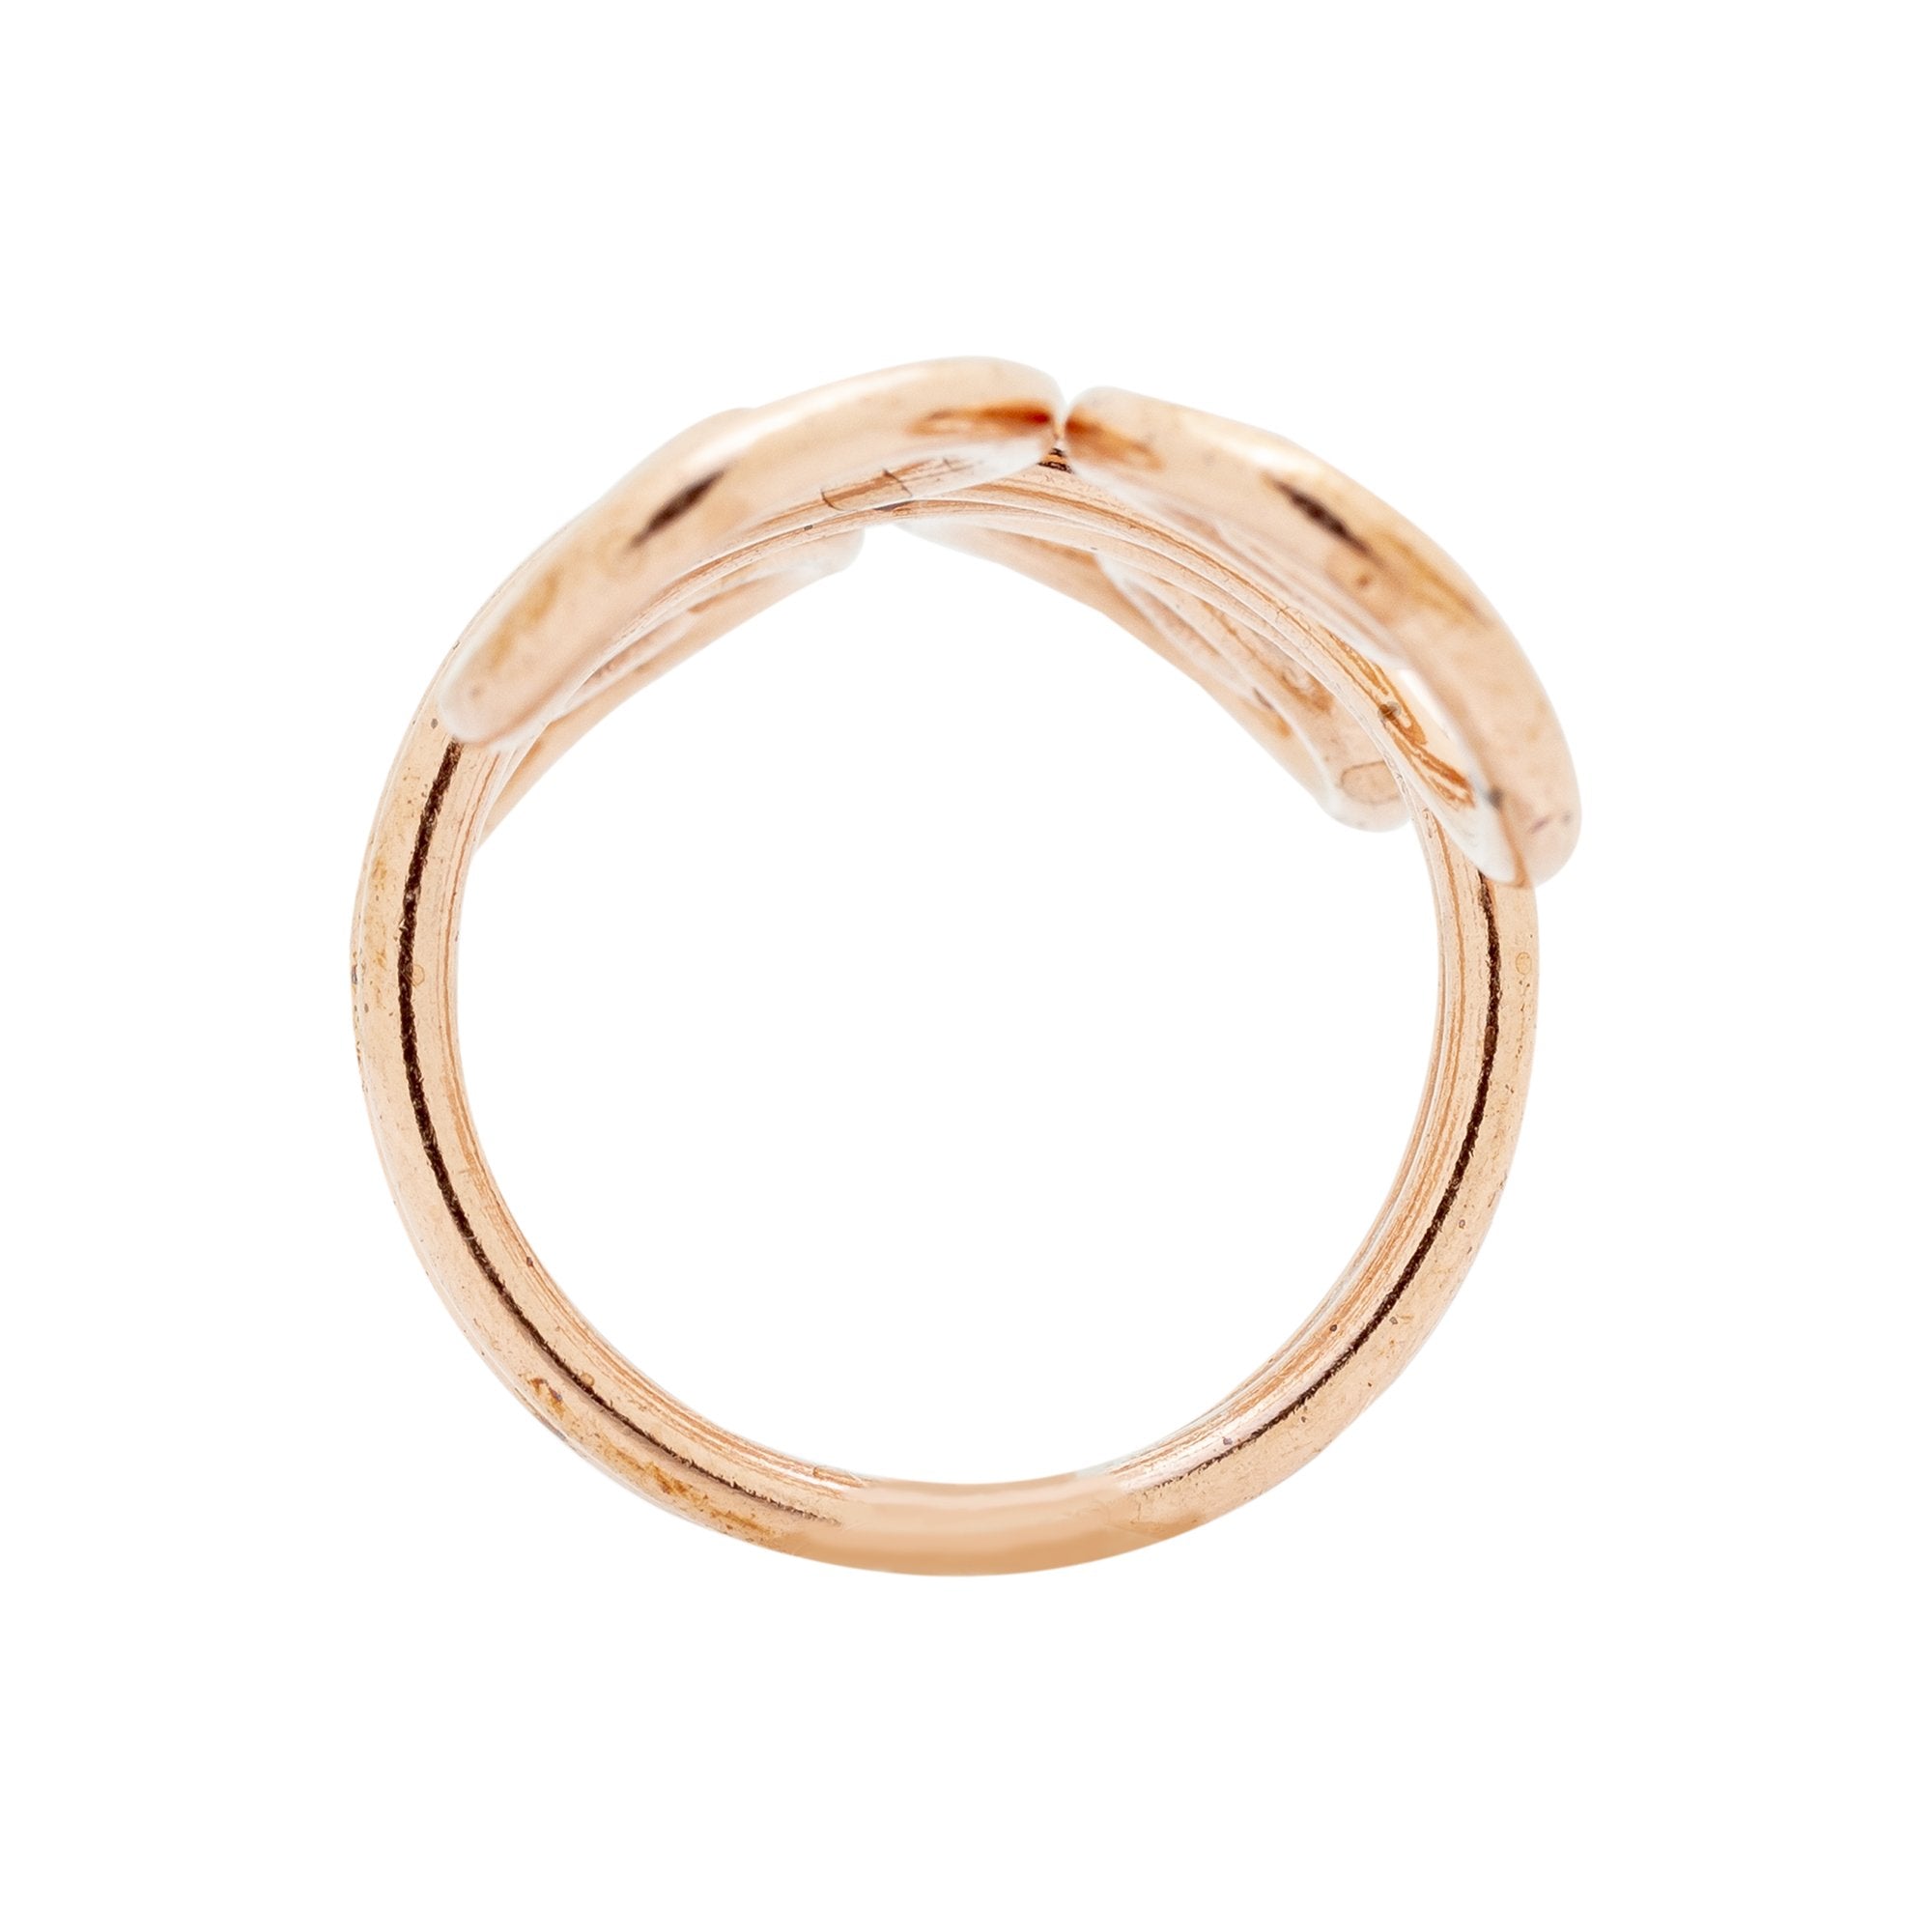 RG.FEL.4003 - Copper Ring